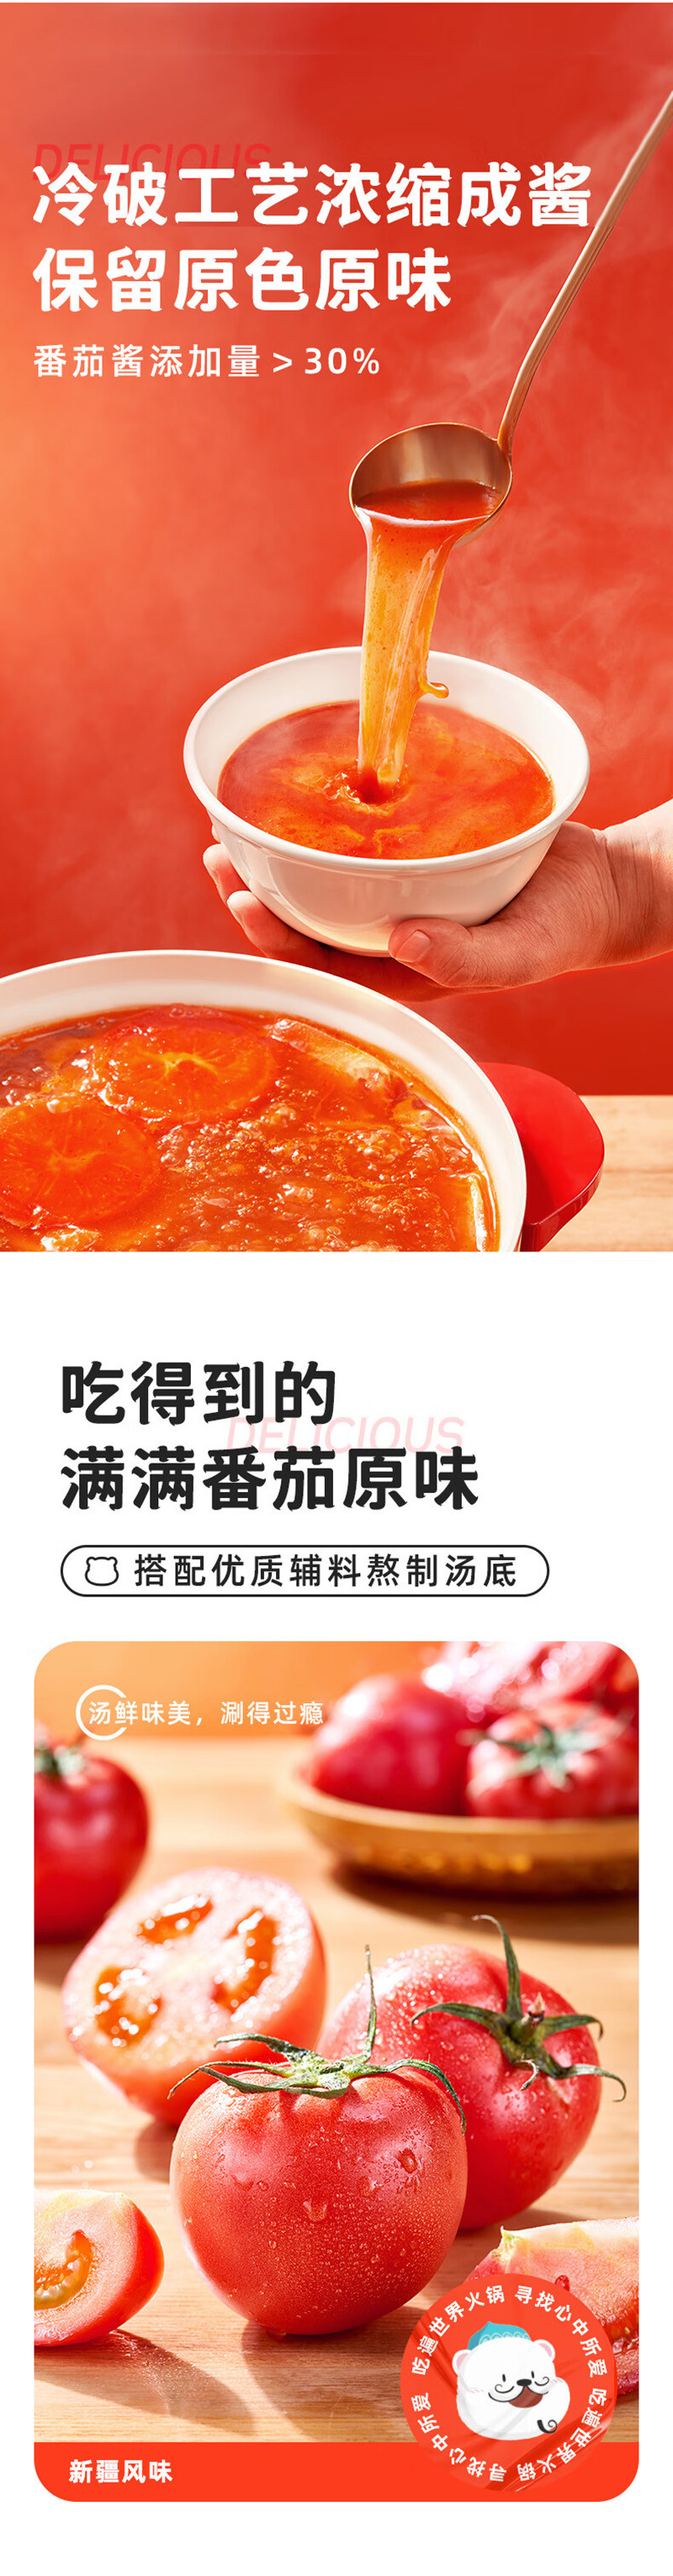 海天 新疆番茄火锅底料煮汤煮面麻辣烫调料200g/袋